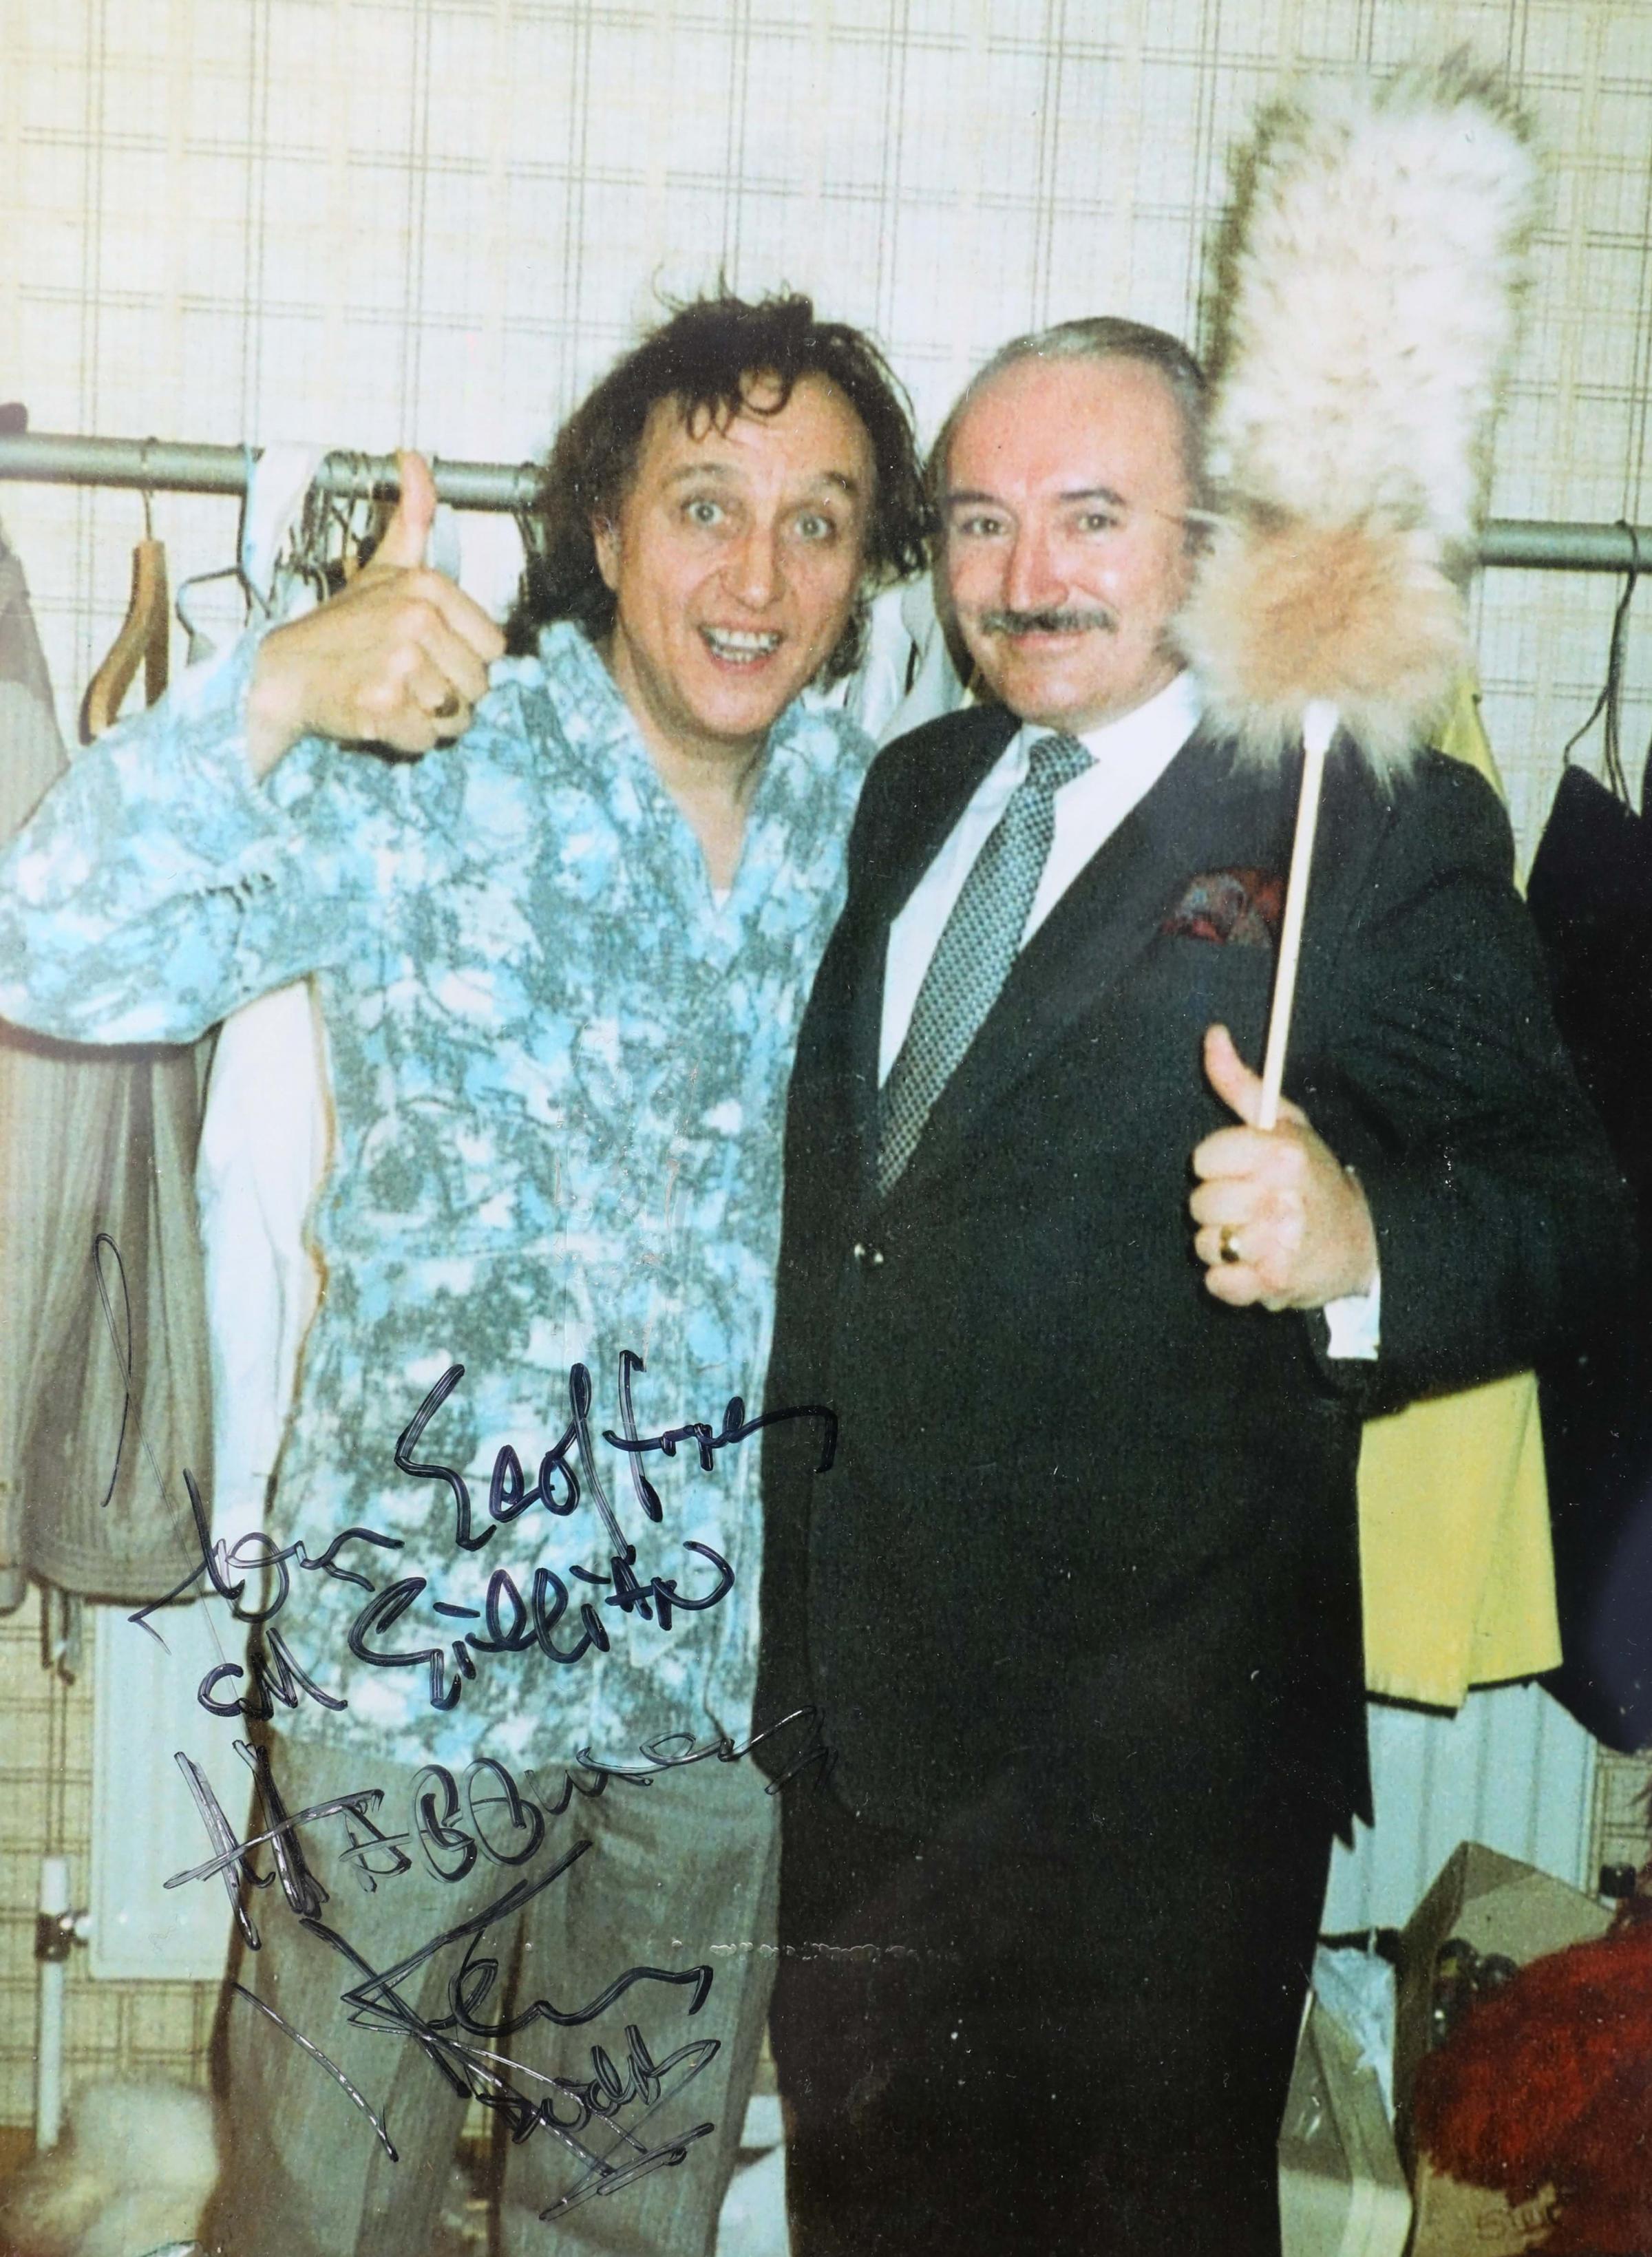 Geoff Williams with Kenn Dodd in 1975.